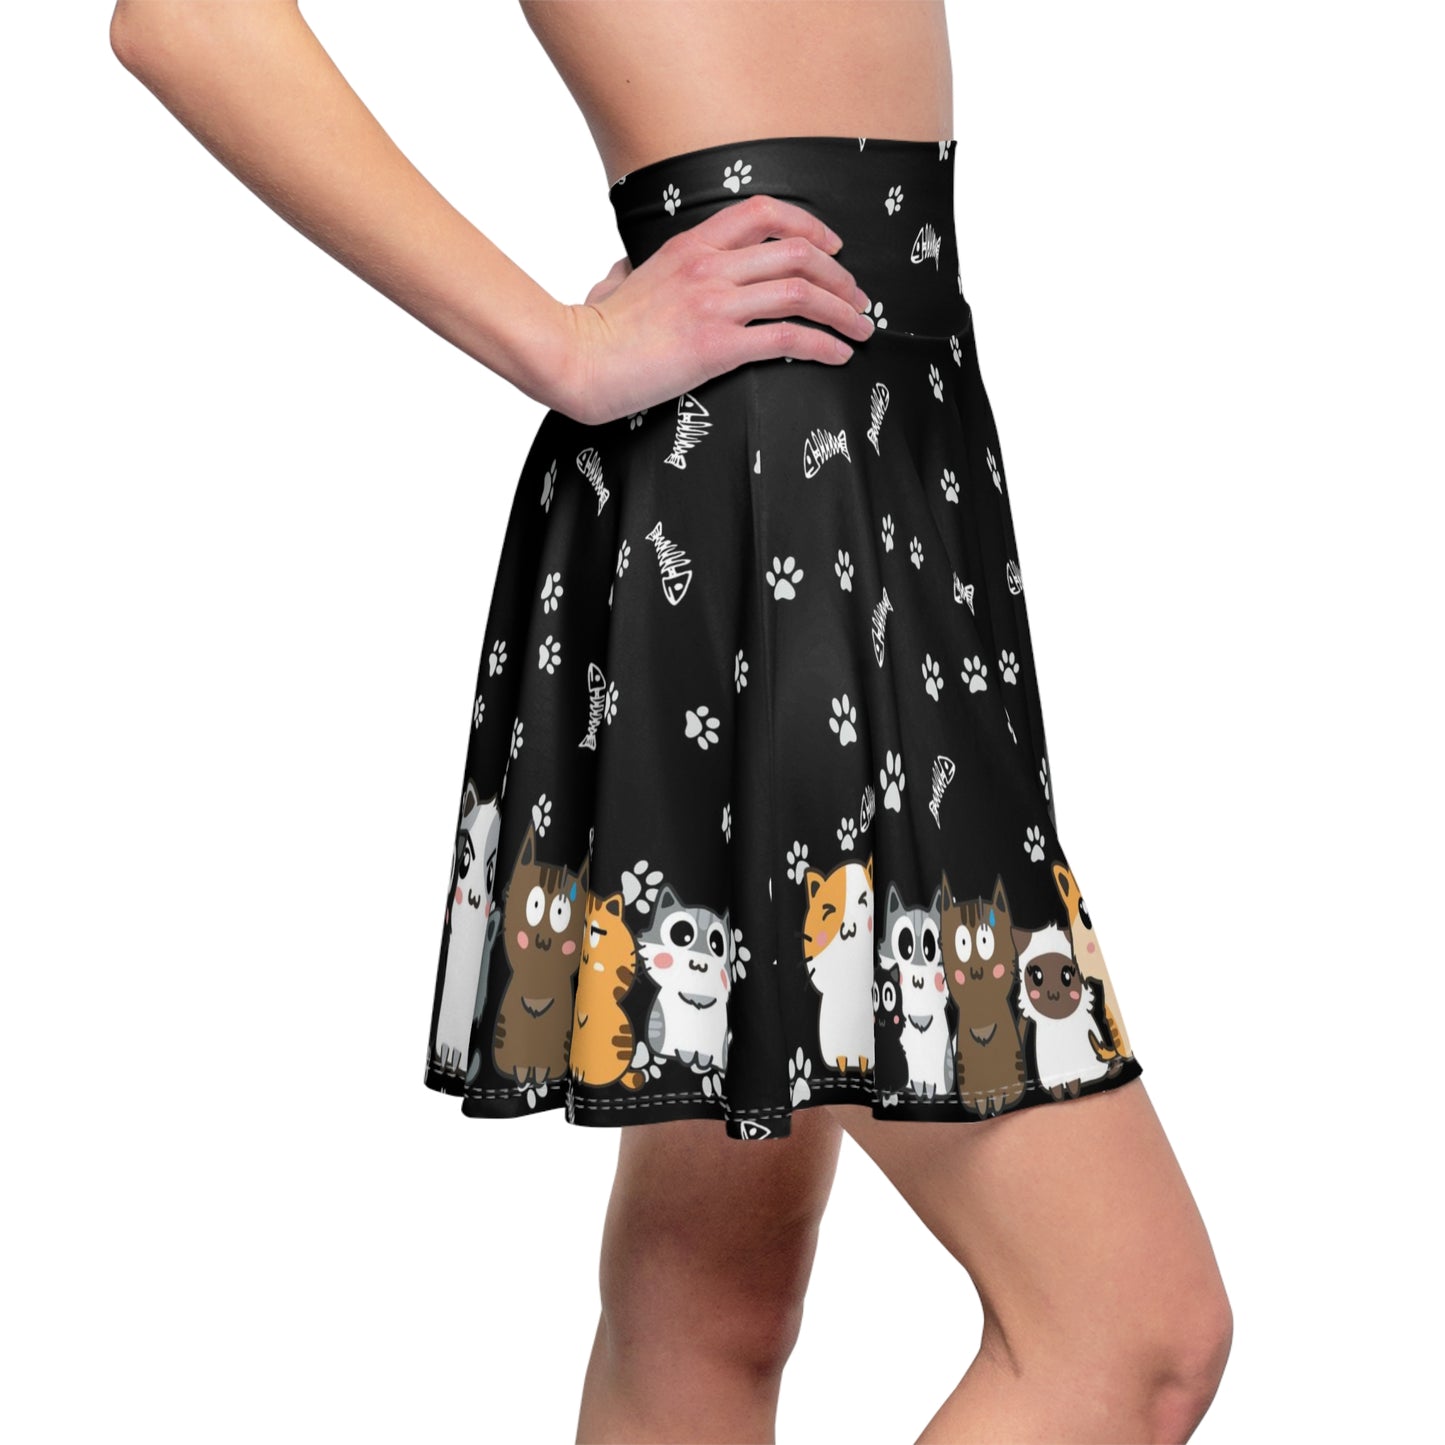 Cute Kitty Cats Skater Skirt - Cat lover Party Skirt